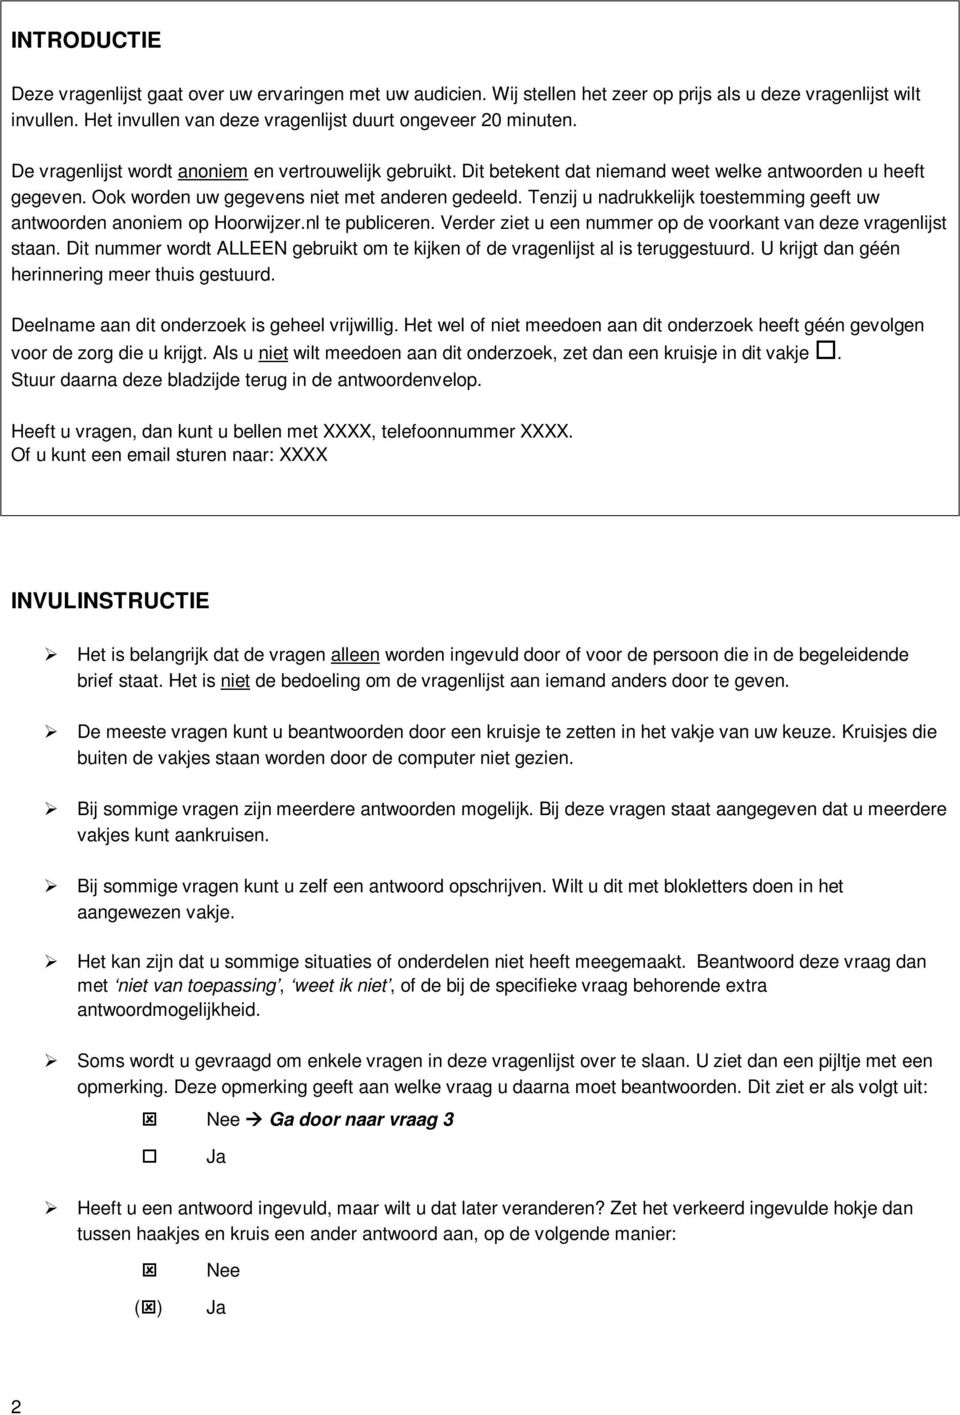 Tenzij u nadrukkelijk toestemming geeft uw antwoorden anoniem op Hoorwijzer.nl te publiceren. Verder ziet u een nummer op de voorkant van deze vragenlijst staan.